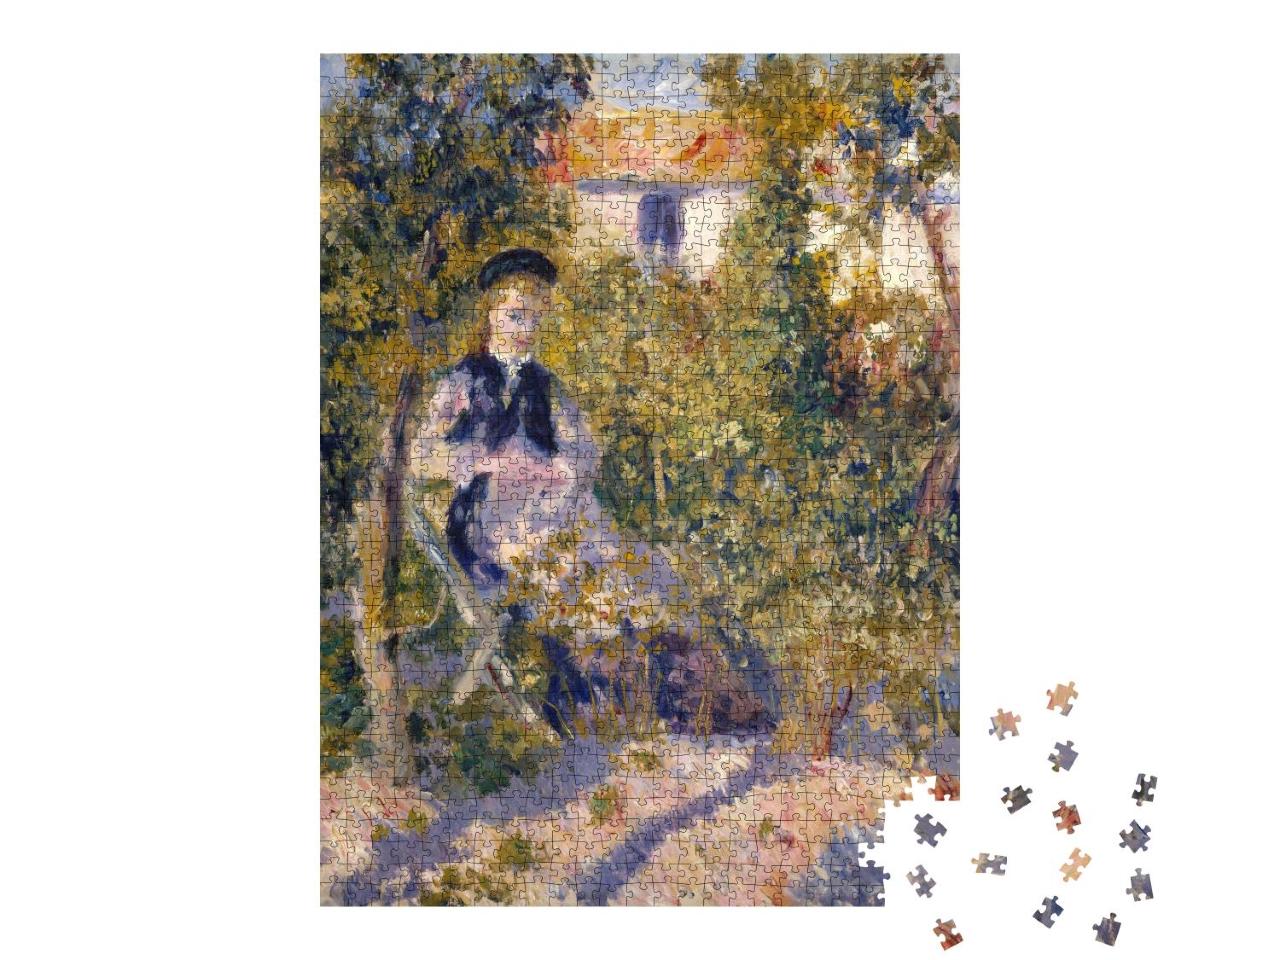 Puzzle 1000 Teile „Nini im Garten, Auguste Renoir 1876“